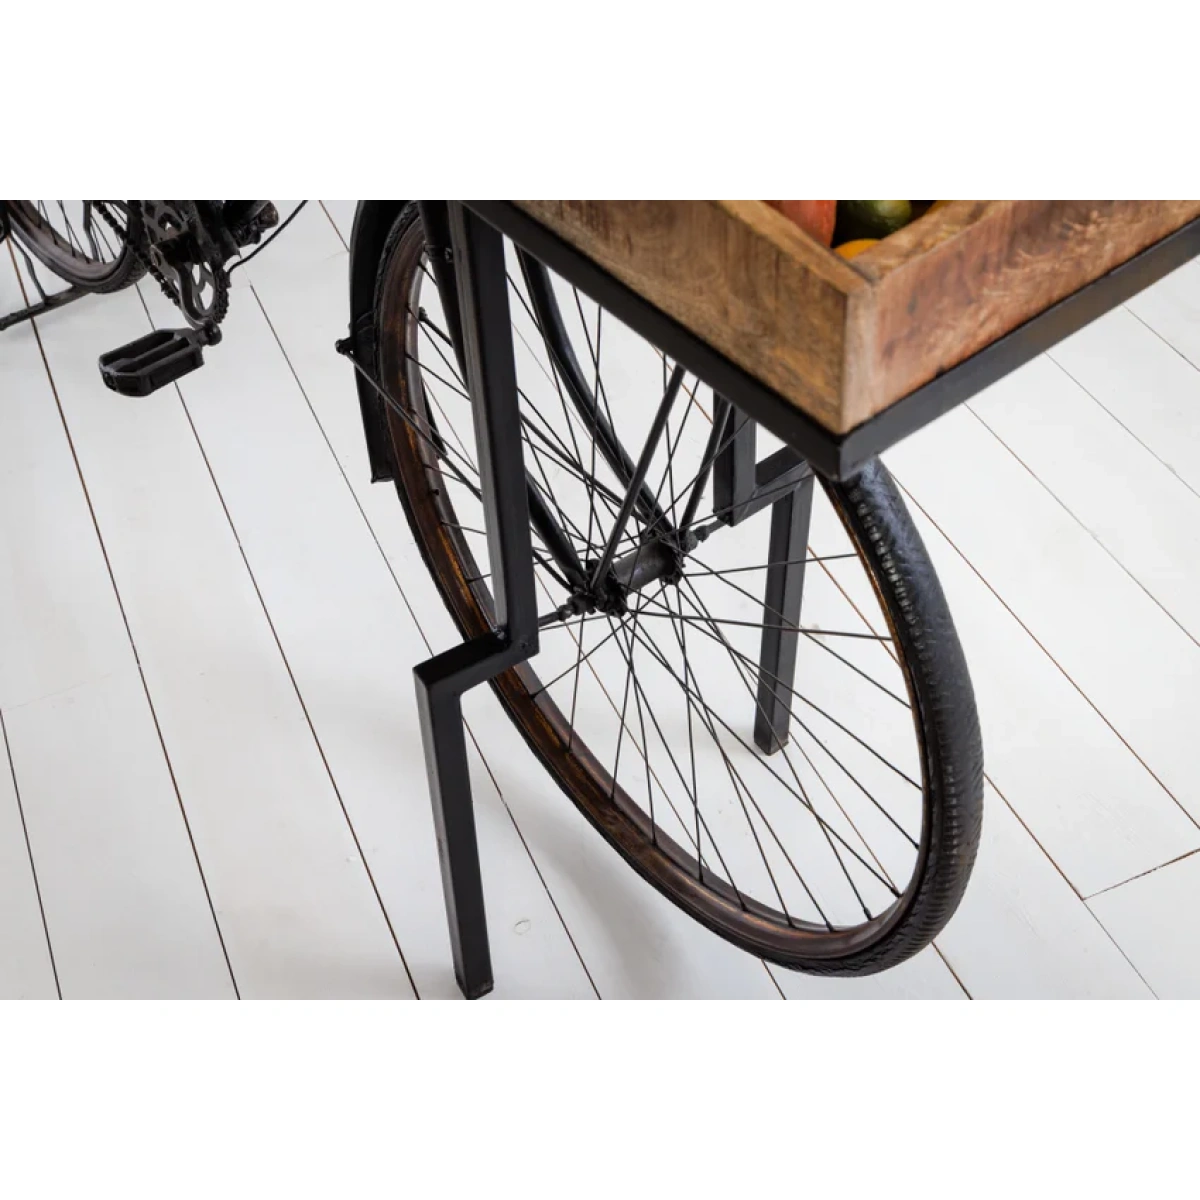 barek-rower-kolor-bialy-czarny-blat-drewno-mango-194x38cm-5